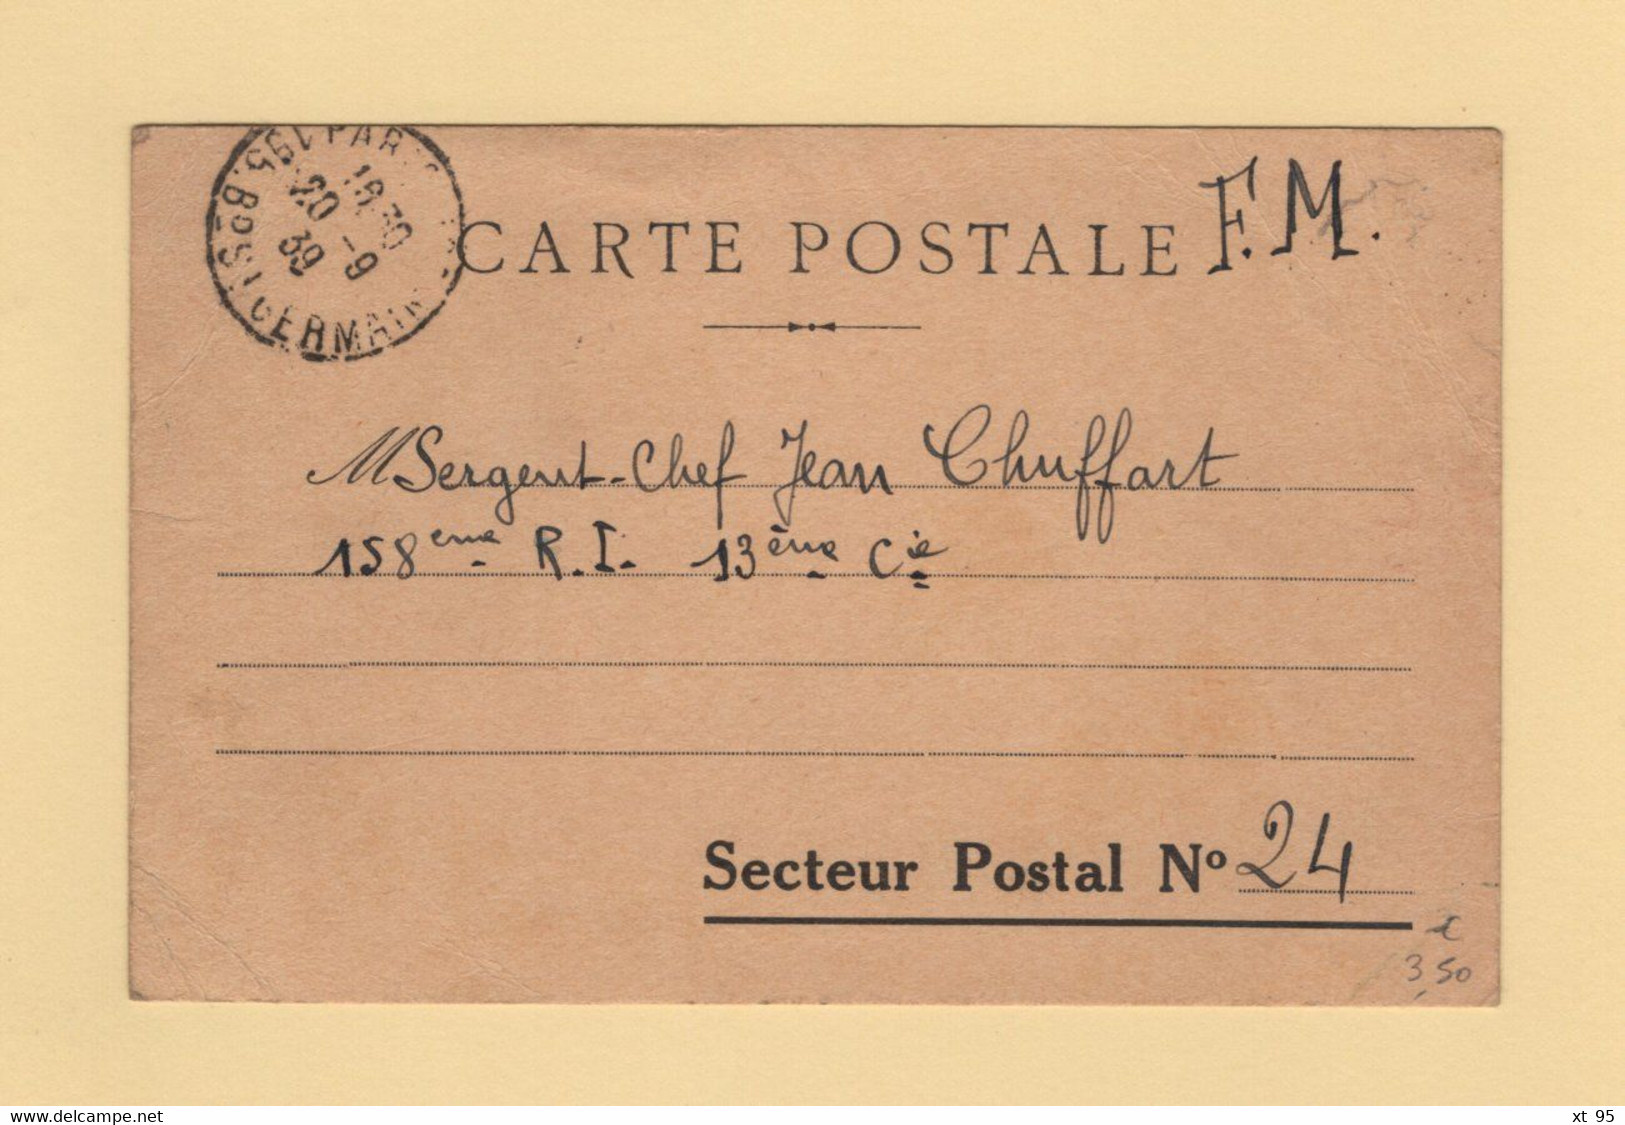 Carte Postale En FM Pour Le Secteur N°24 - Paris - 1939 - Oorlog 1939-45